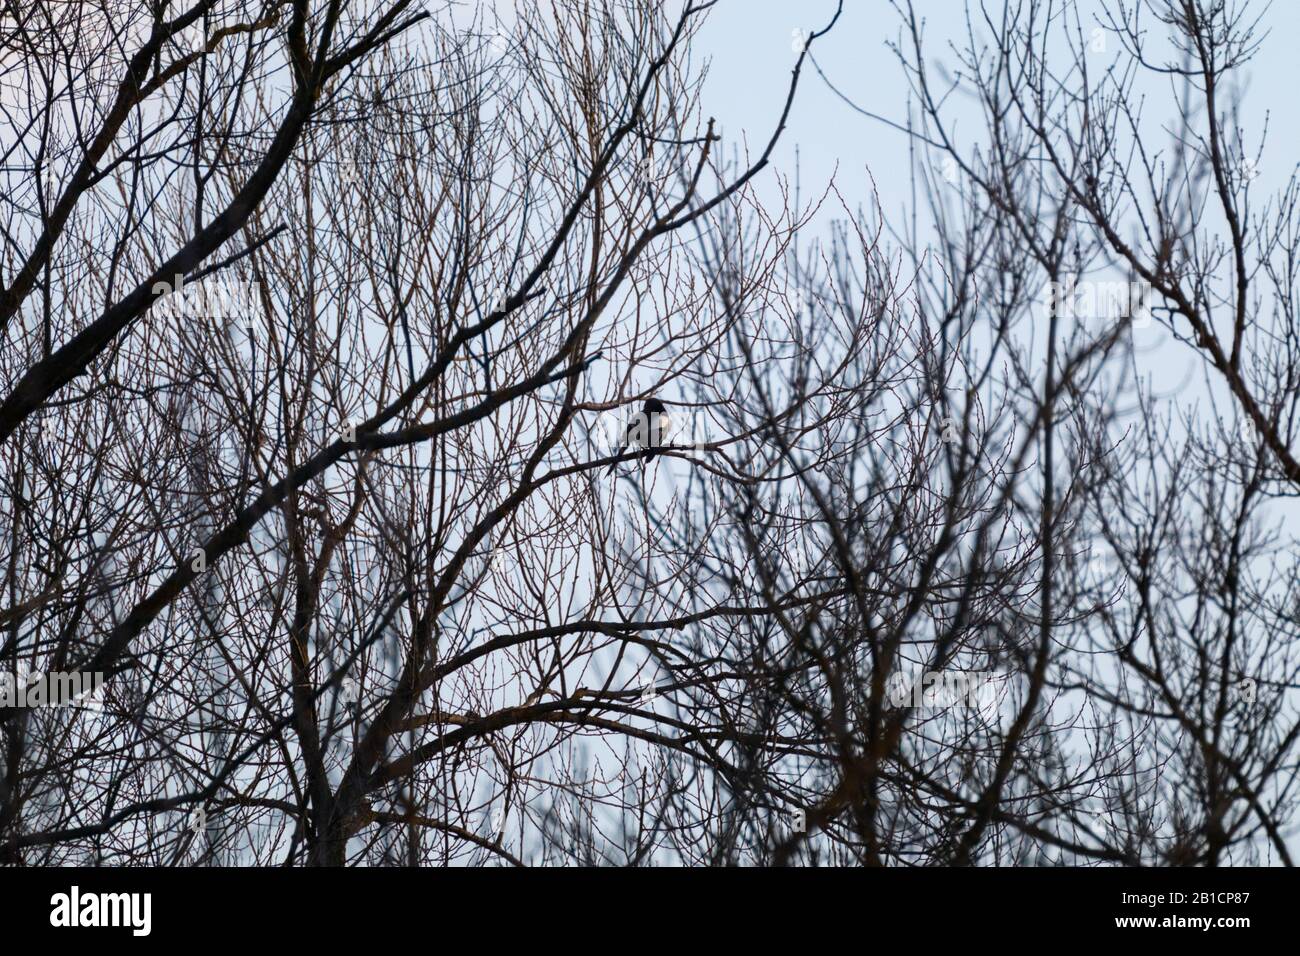 Vogelsilhouette auf keinem Blätter Baum Zweig sitzend. Blaue Himmelswolke und Baumkontraste schwarze Umrisse. Natur beobachtet wilden Hintergrund Stockfoto